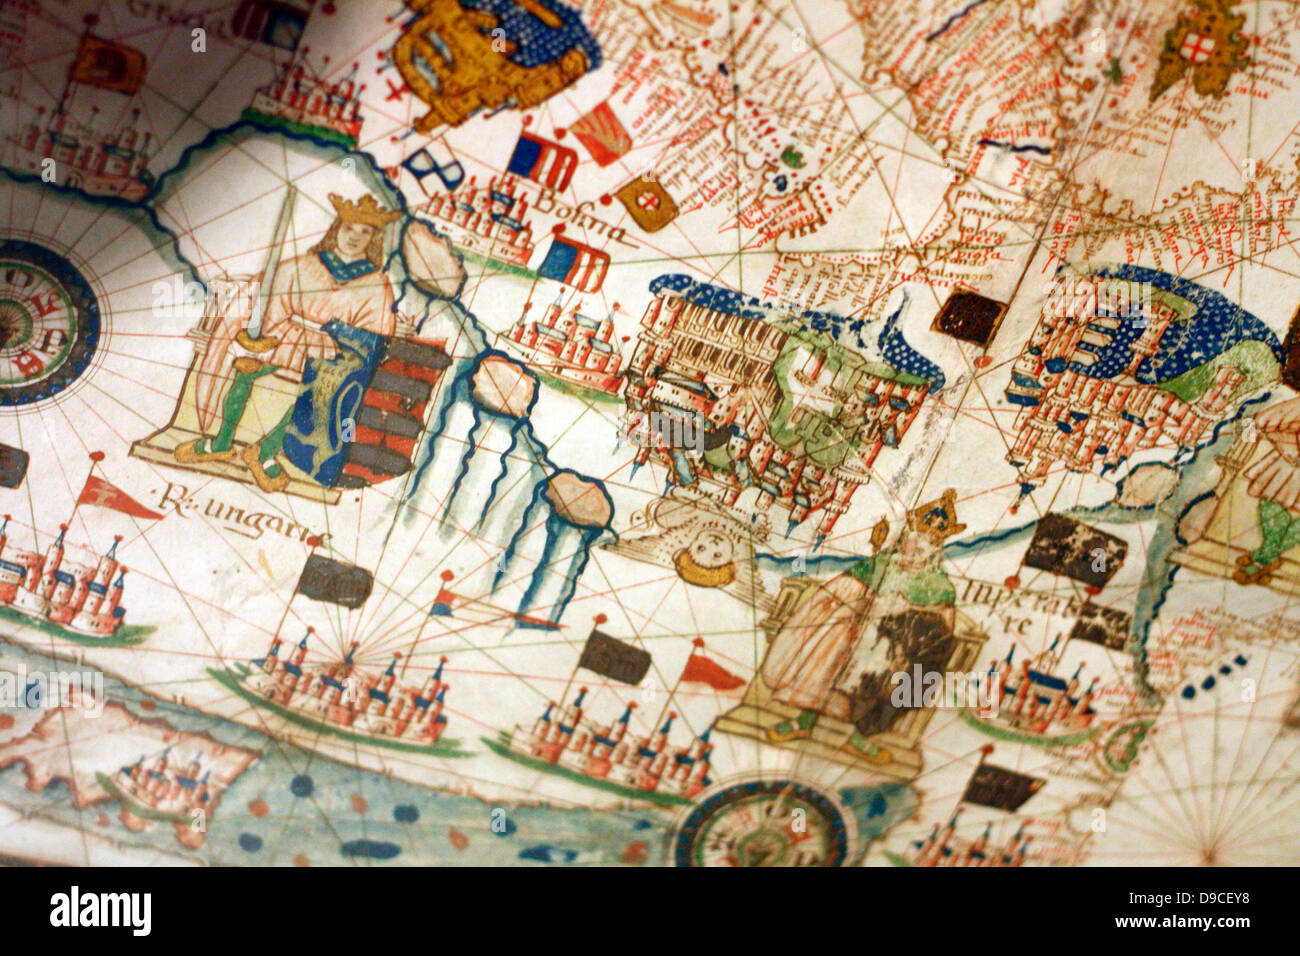 Du sud (Haut) vue d'une carte de navigation de l'Europe et le Moyen-Orient de Jacopo Russo 1528, Messine. La Sicile. Montrant la Suisse, l'Italie  ; Balkans et la Hongrie Banque D'Images